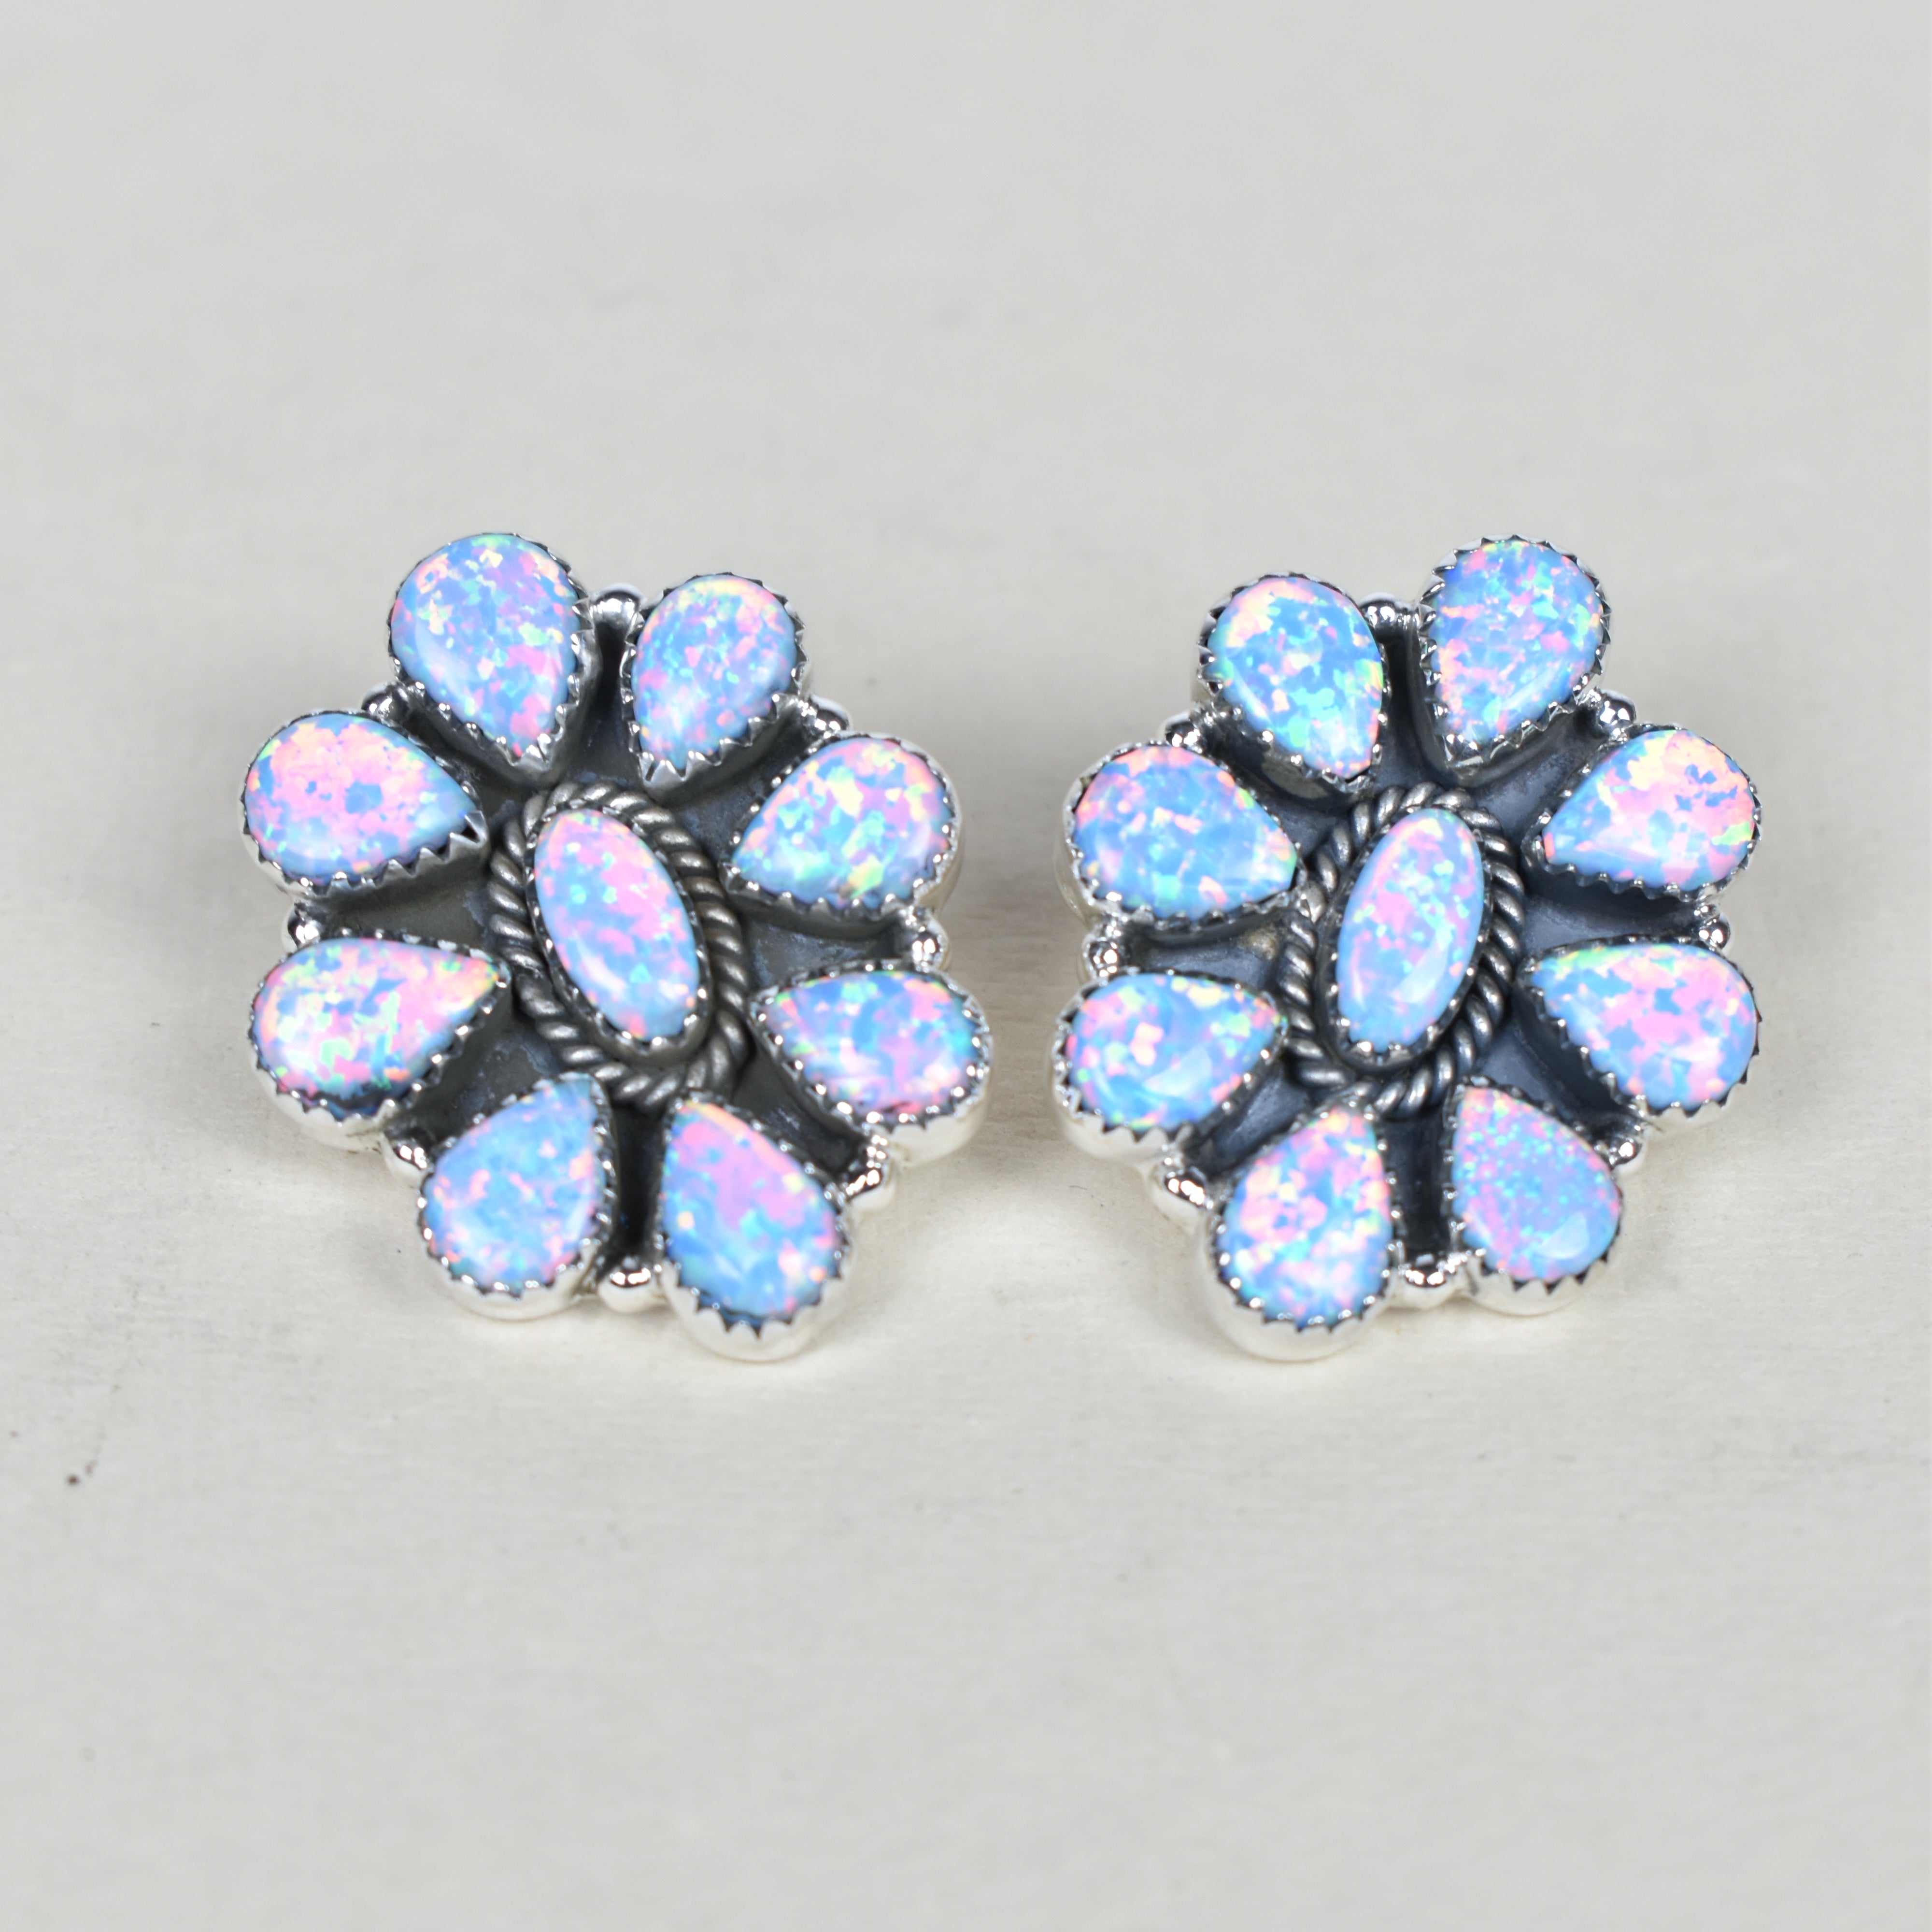 Stone Blossom Sterling Silver Earrings-Earrings-Krush Kandy, Women's Online Fashion Boutique Located in Phoenix, Arizona (Scottsdale Area)